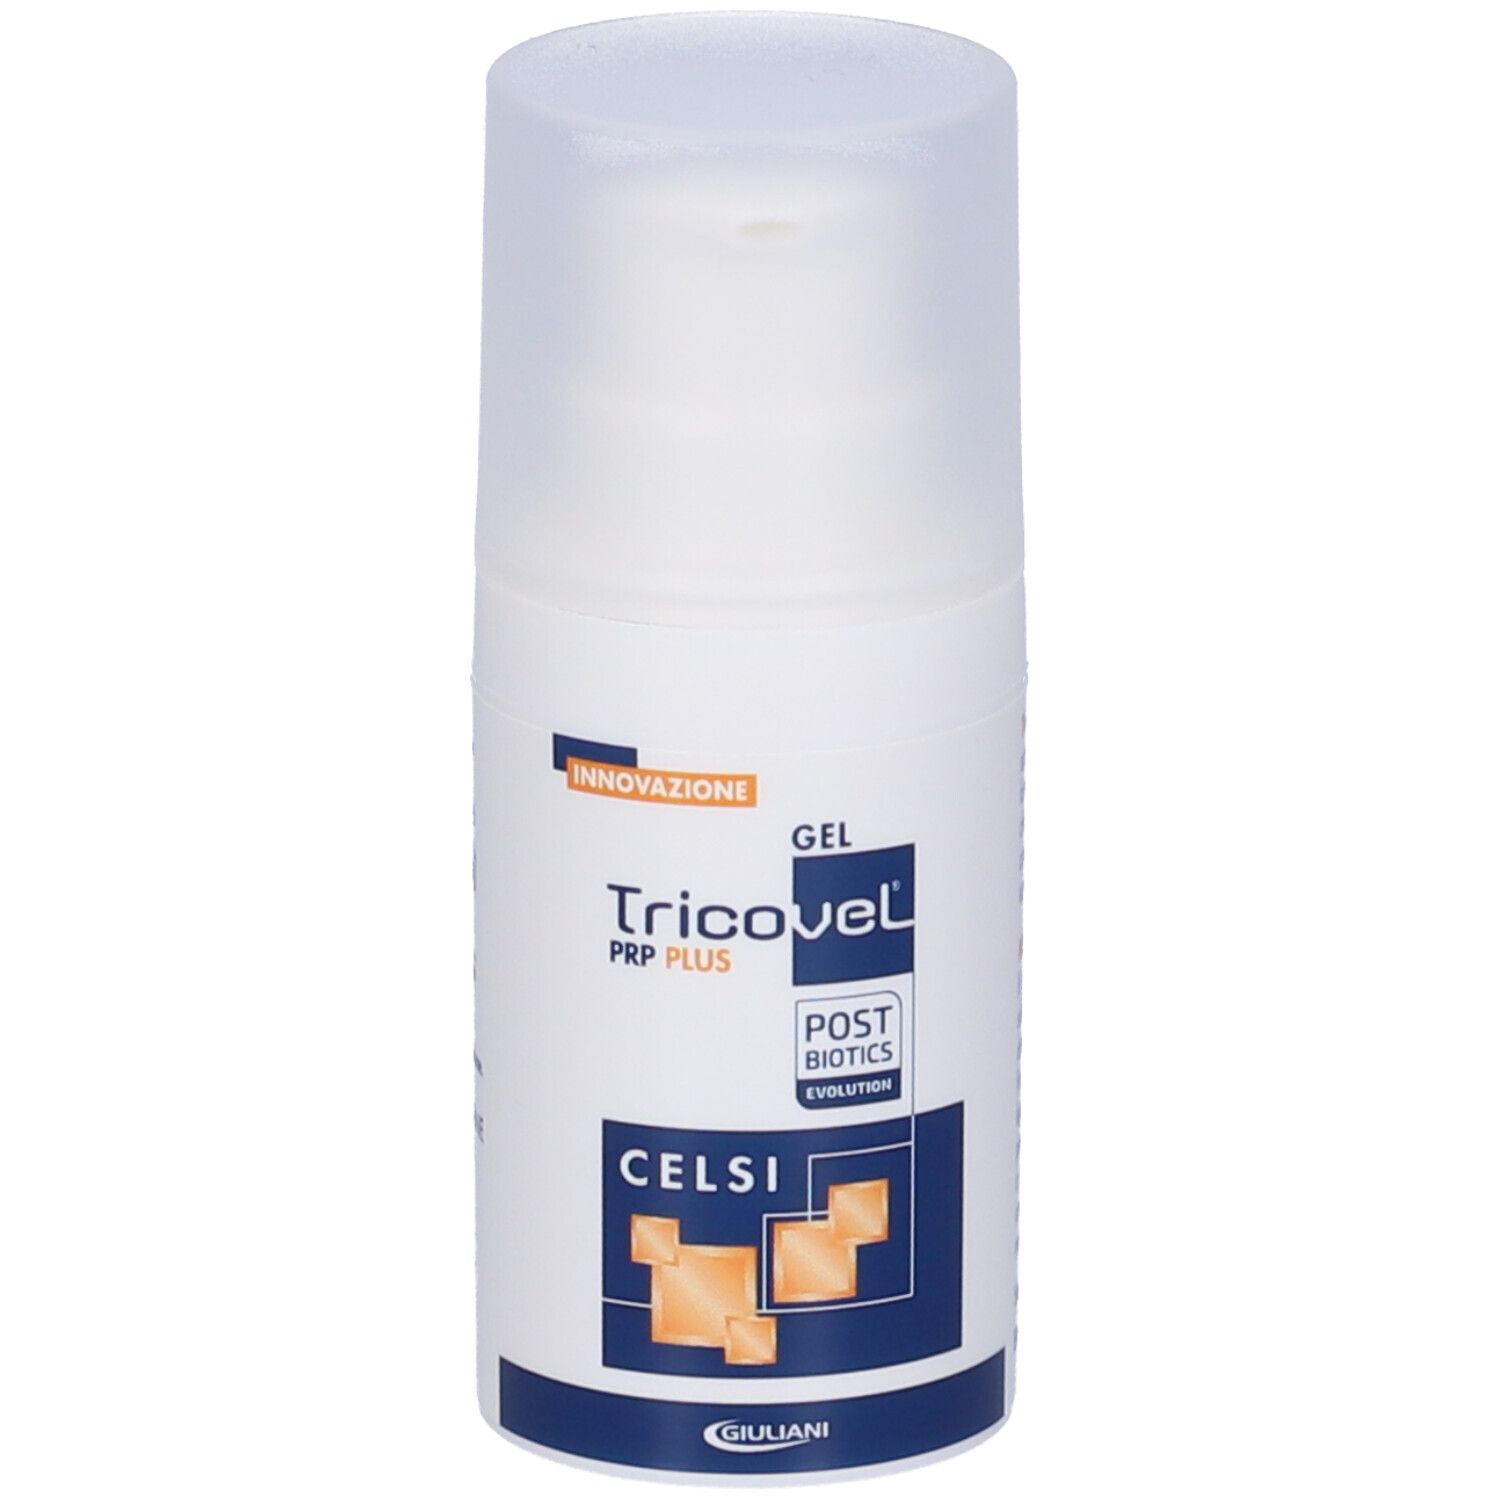 Gel Tricovel® PRP Plus